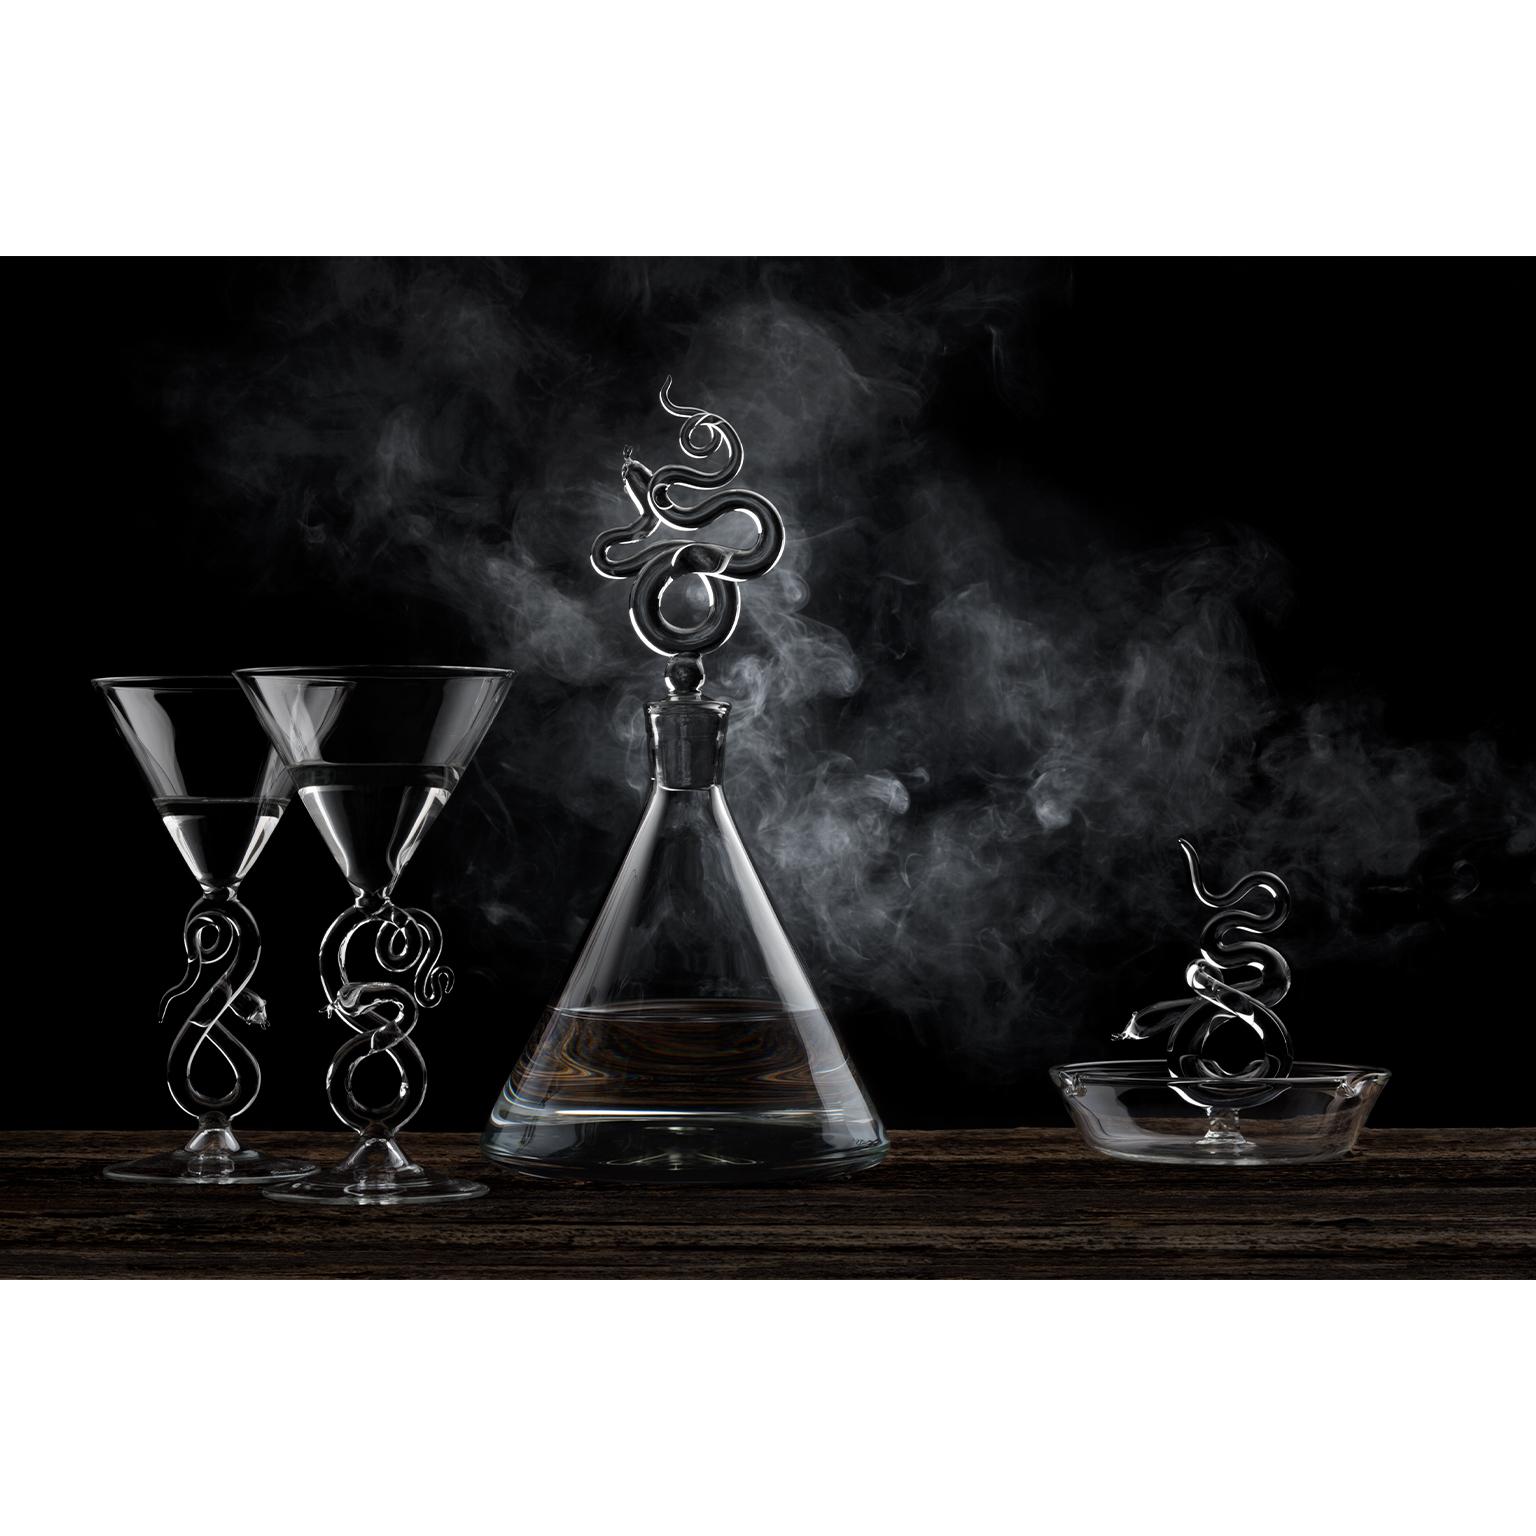 AM Contemporary Serpentine mundgeblasenes Glas Likör Dekanter, Gläser und Astray Set